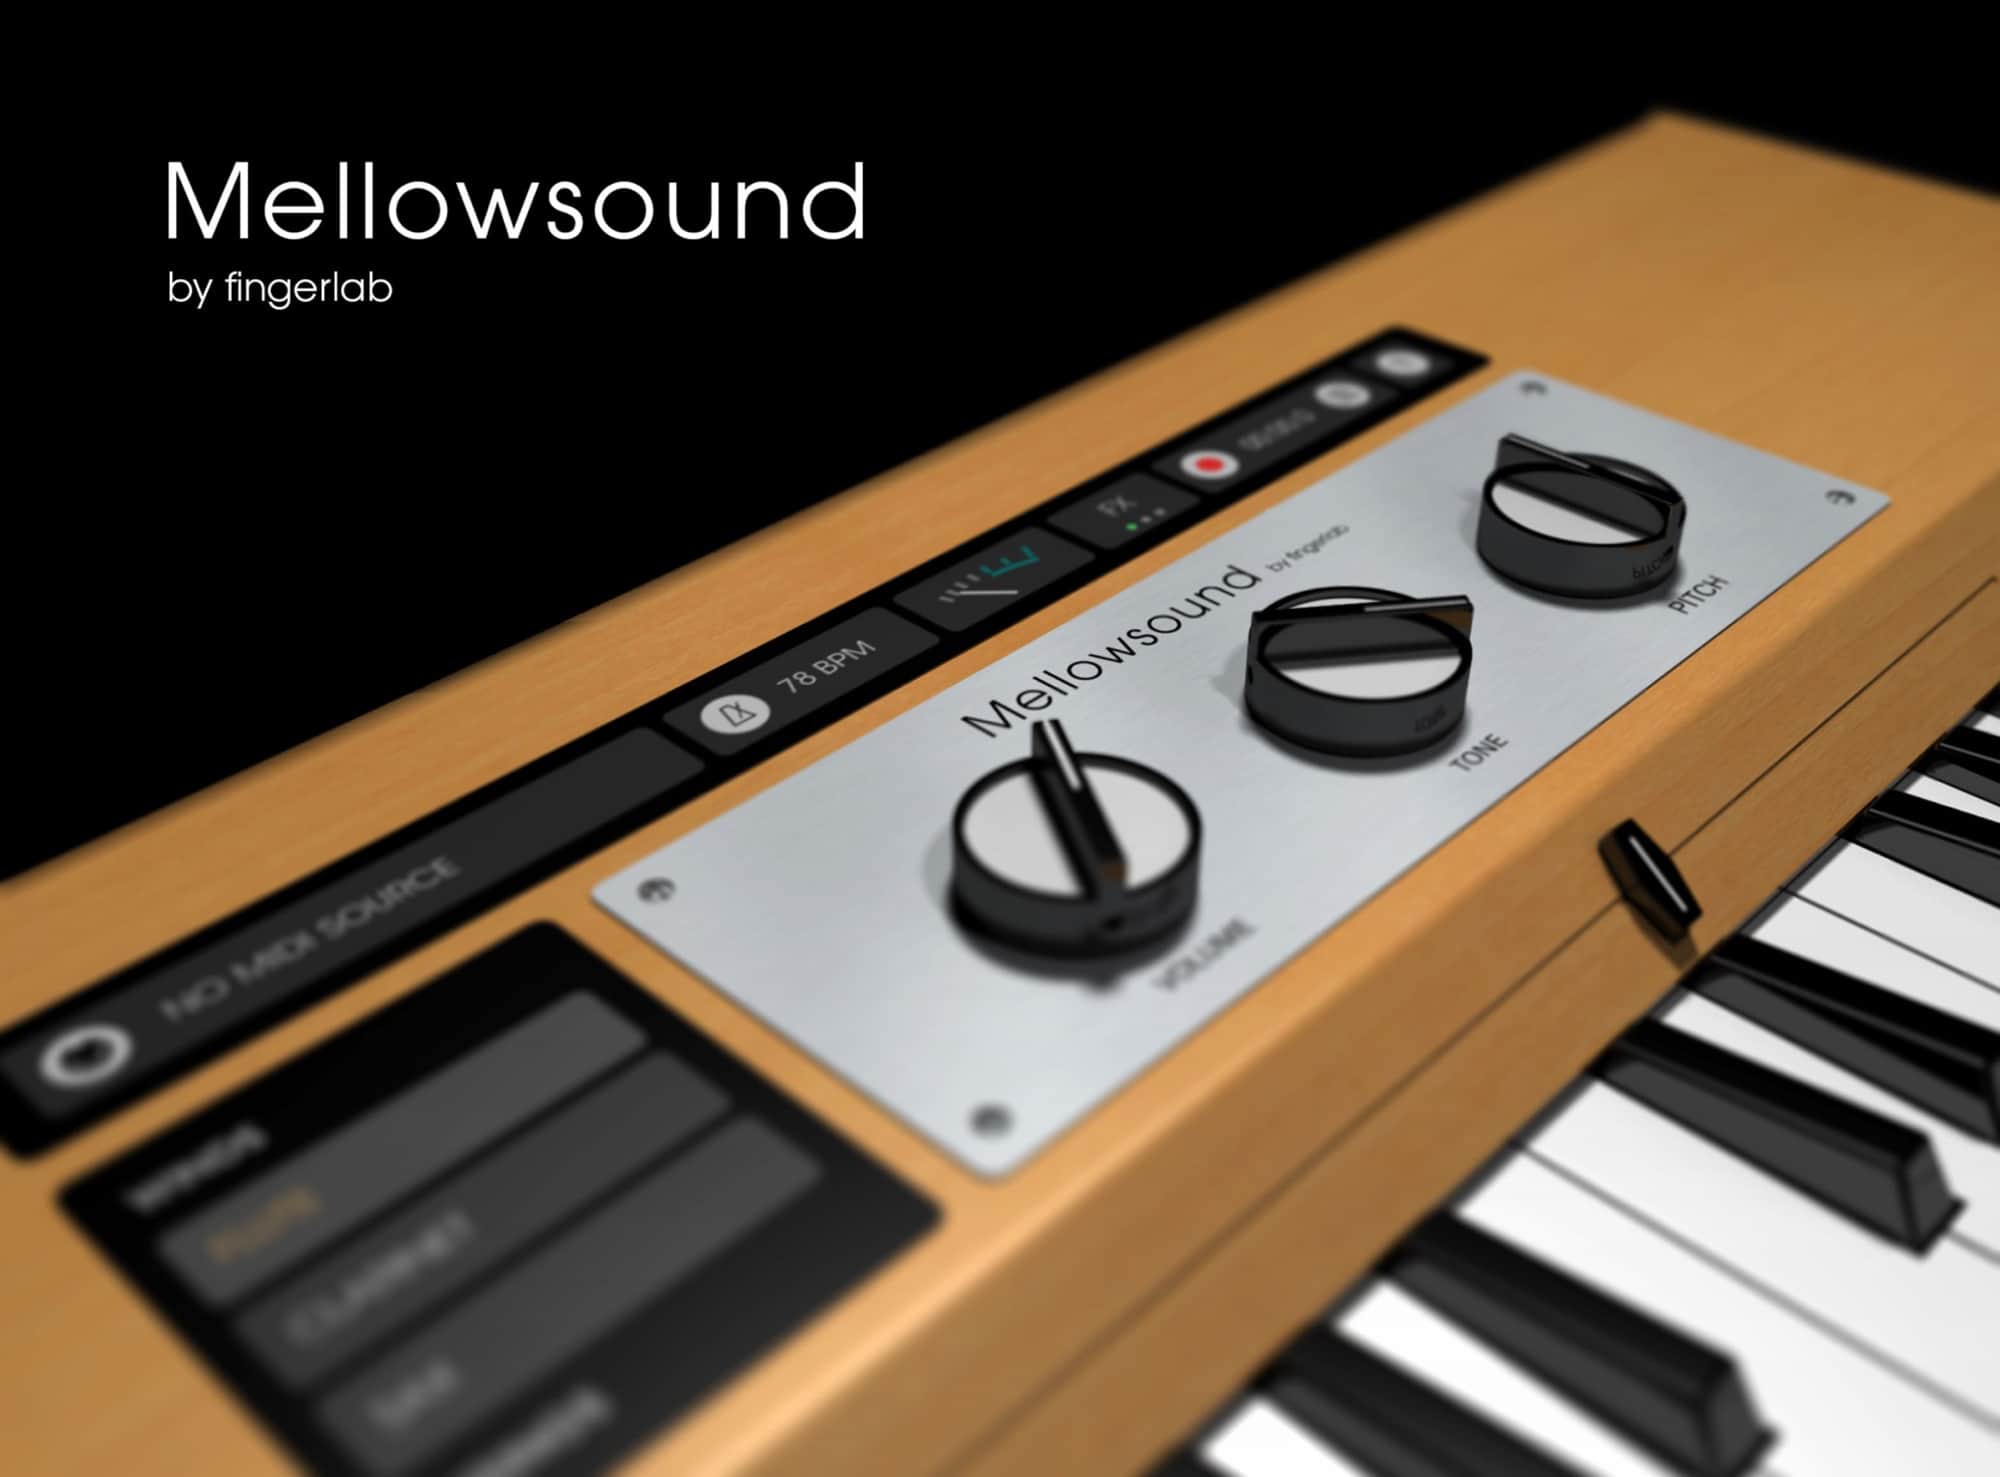 Mellow sounds app roundup